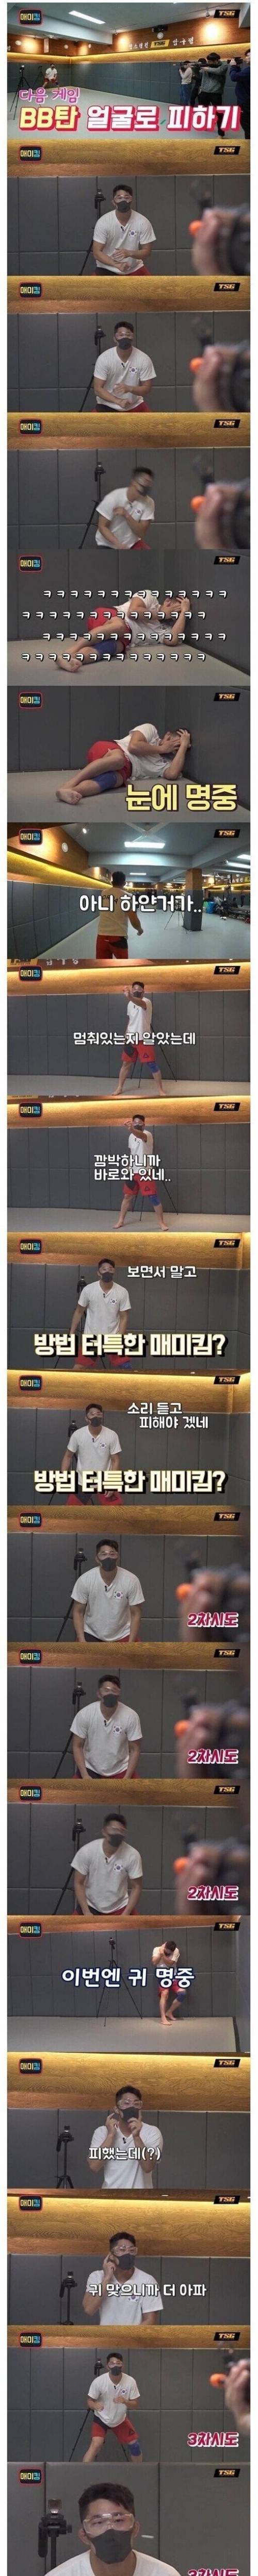 김동현은 얼굴로 쏘는 비비탄을 피할 수 있을까?.jpg